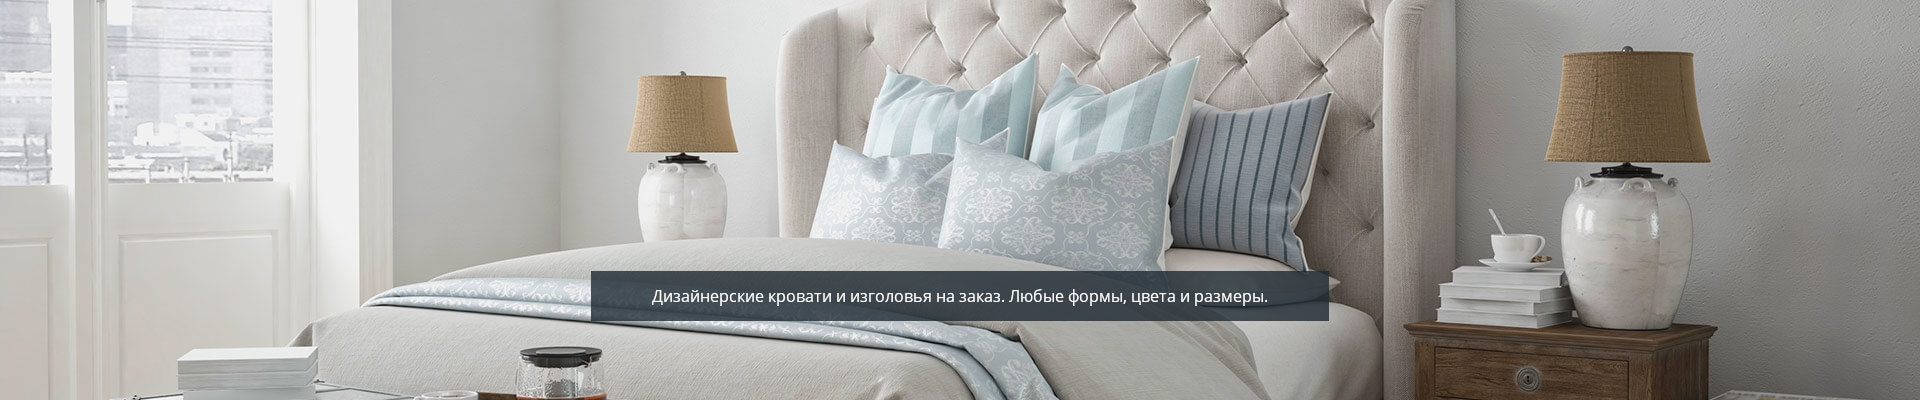 Дизайнерские кровати от «Мебельвмоде»